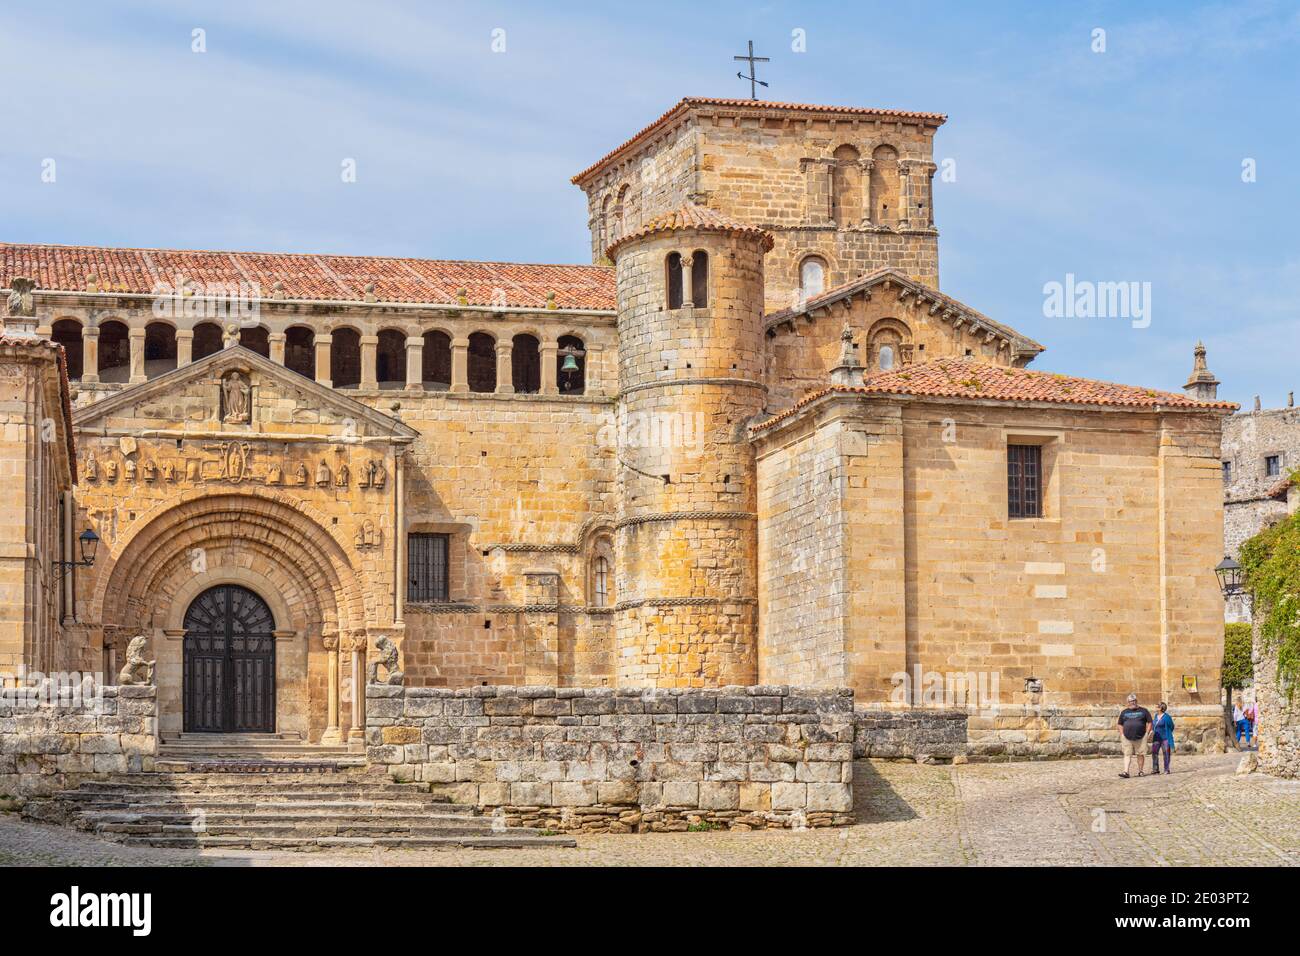 L'église romane de la Colegiata, Santillana del Mar, Cantabrie, Espagne. Nom complet: Colegiata de Santa Juliana de Santillana del Mar. Banque D'Images